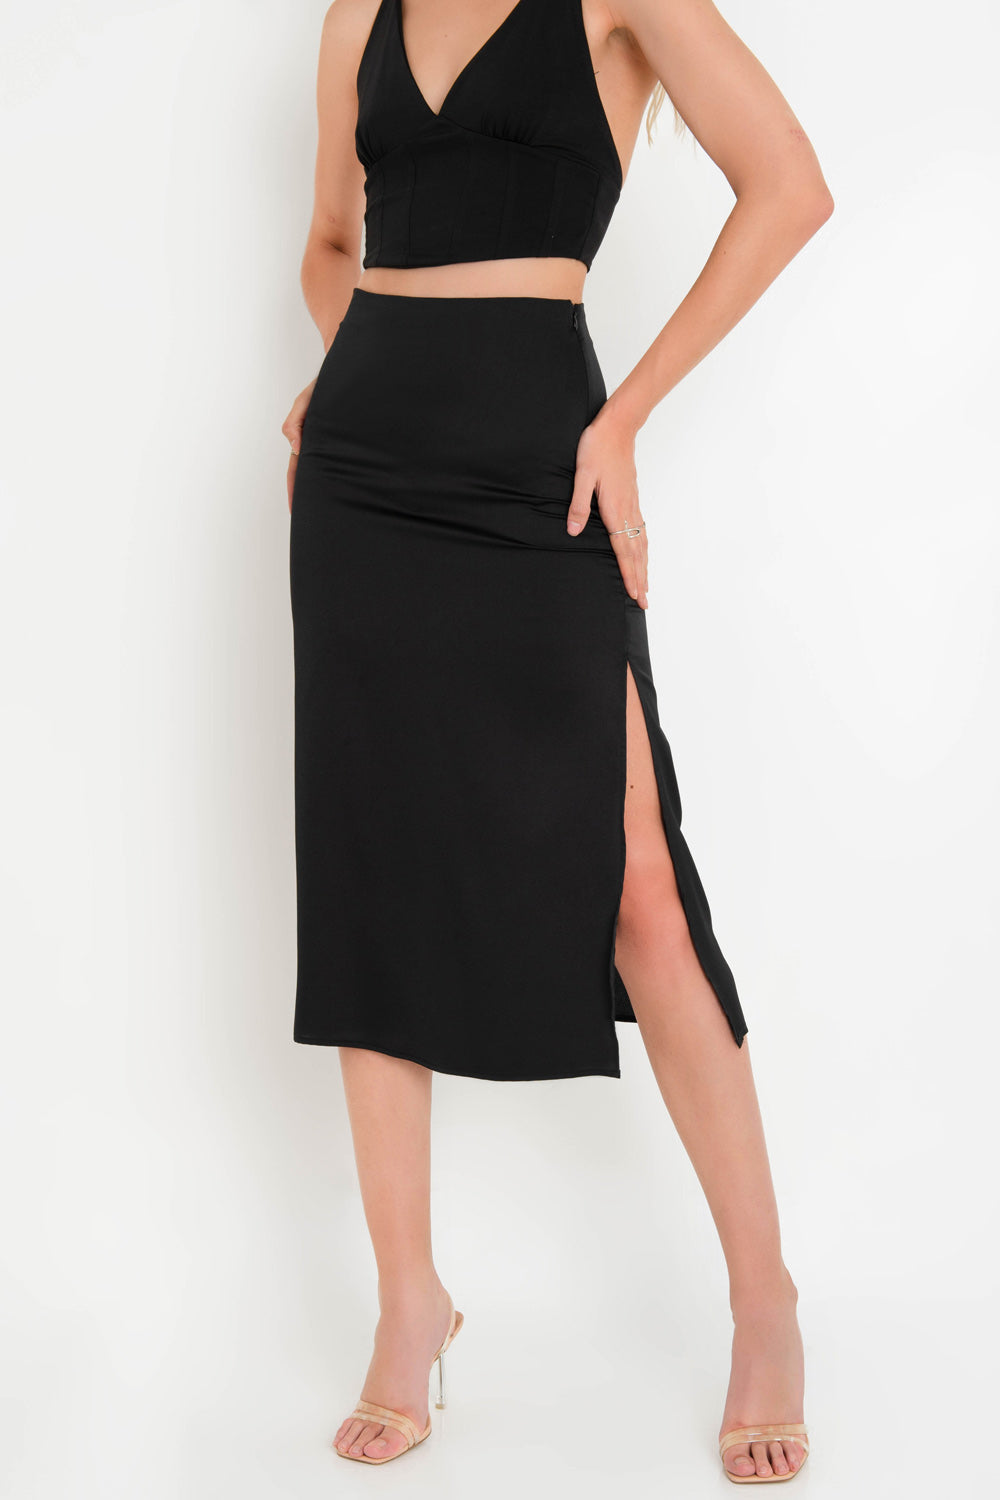 Falda midi ajustada de fit recto, cintura alta y abertura lateral en bajo. Cierre lateral con cremallera oculta